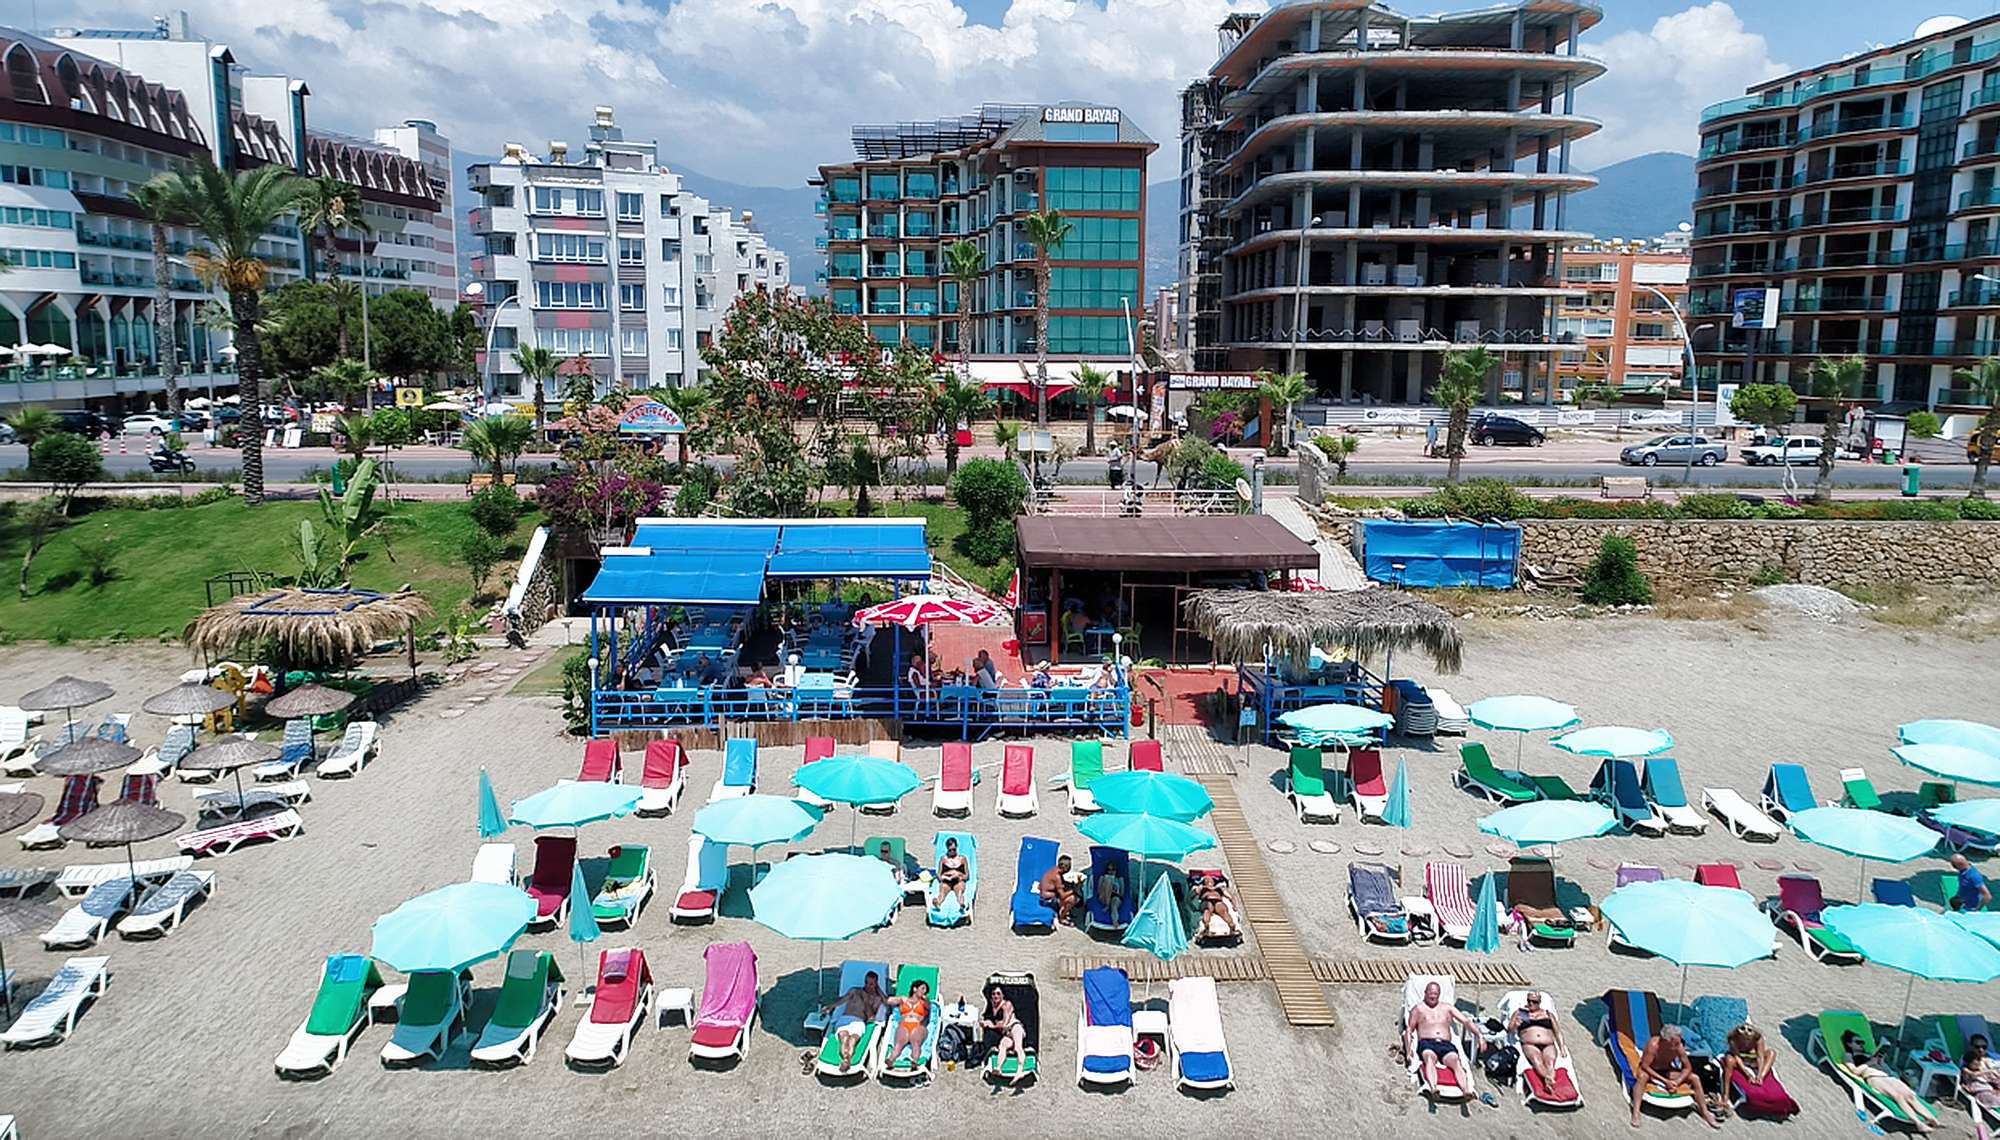 Club bayar beach 4. Grand Bayar Beach Hotel 4. Отель в Турции Club Bayar Beach. Отель Баяр Бич Аланья Турция. Туркмен отель Алания Турция.